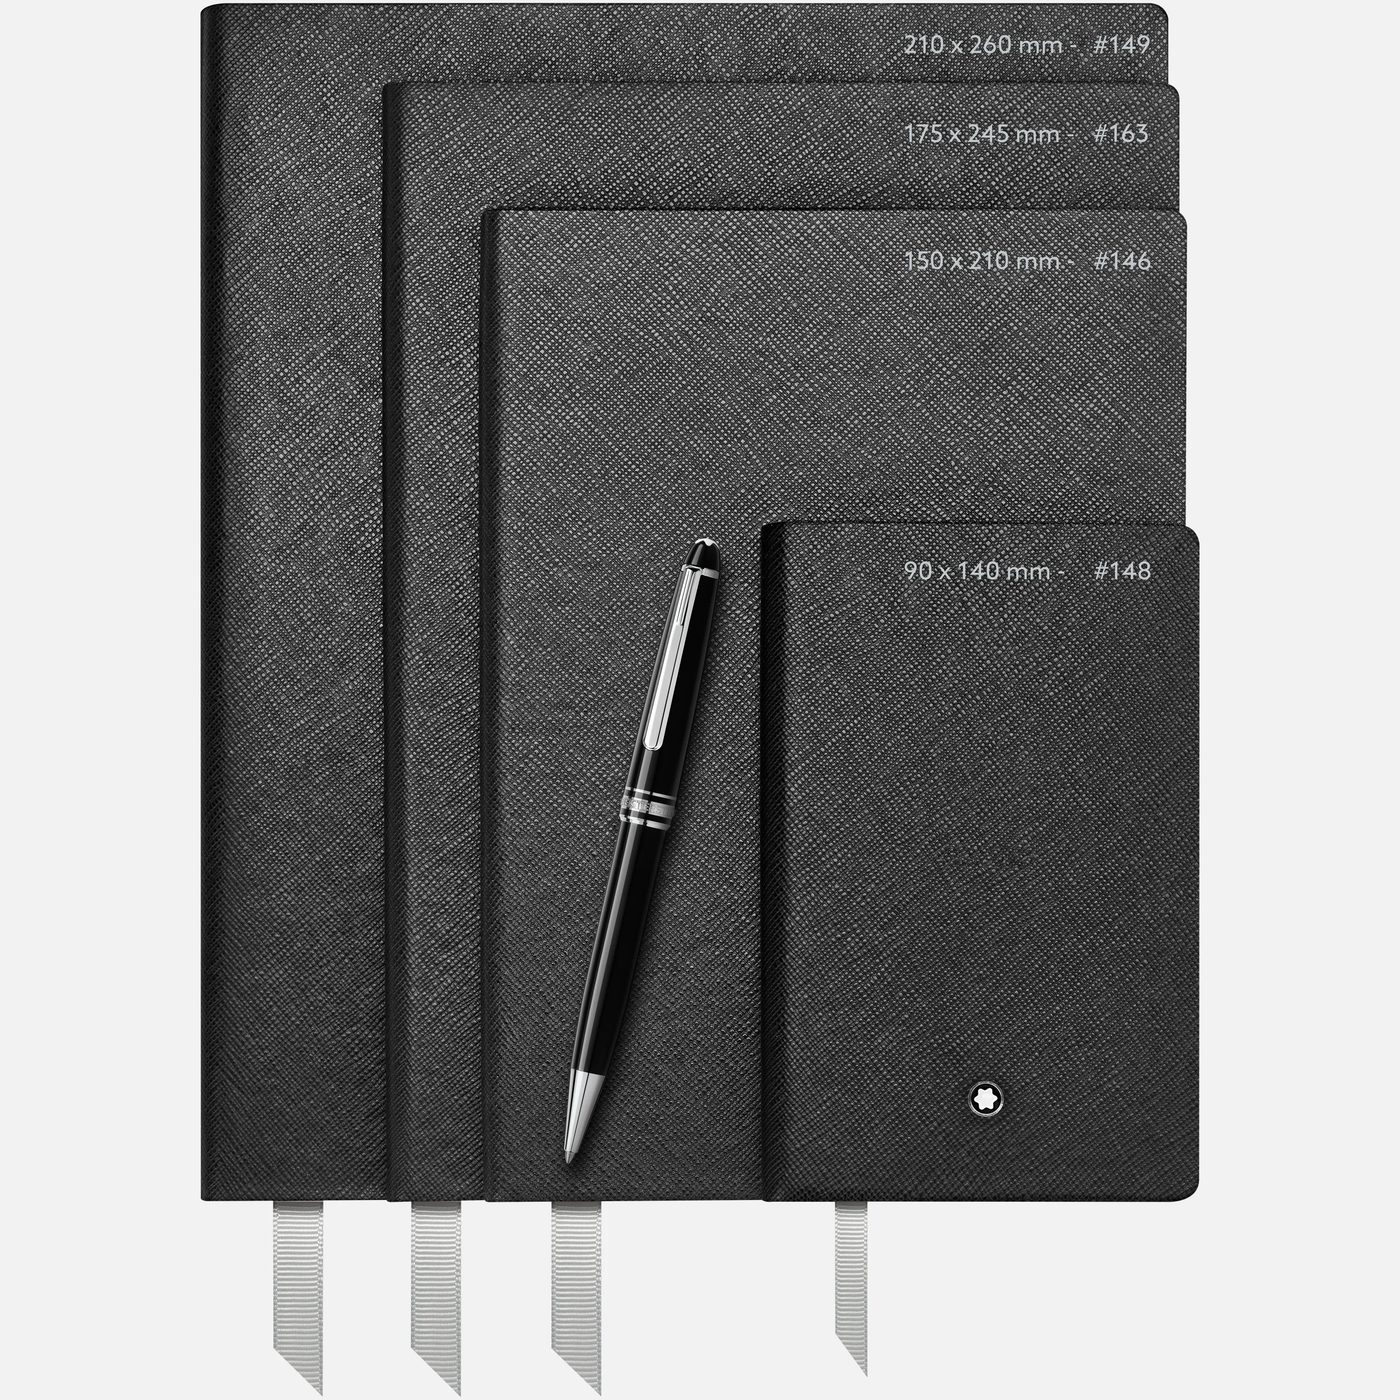 Montblanc Medium Notebook Dimensions